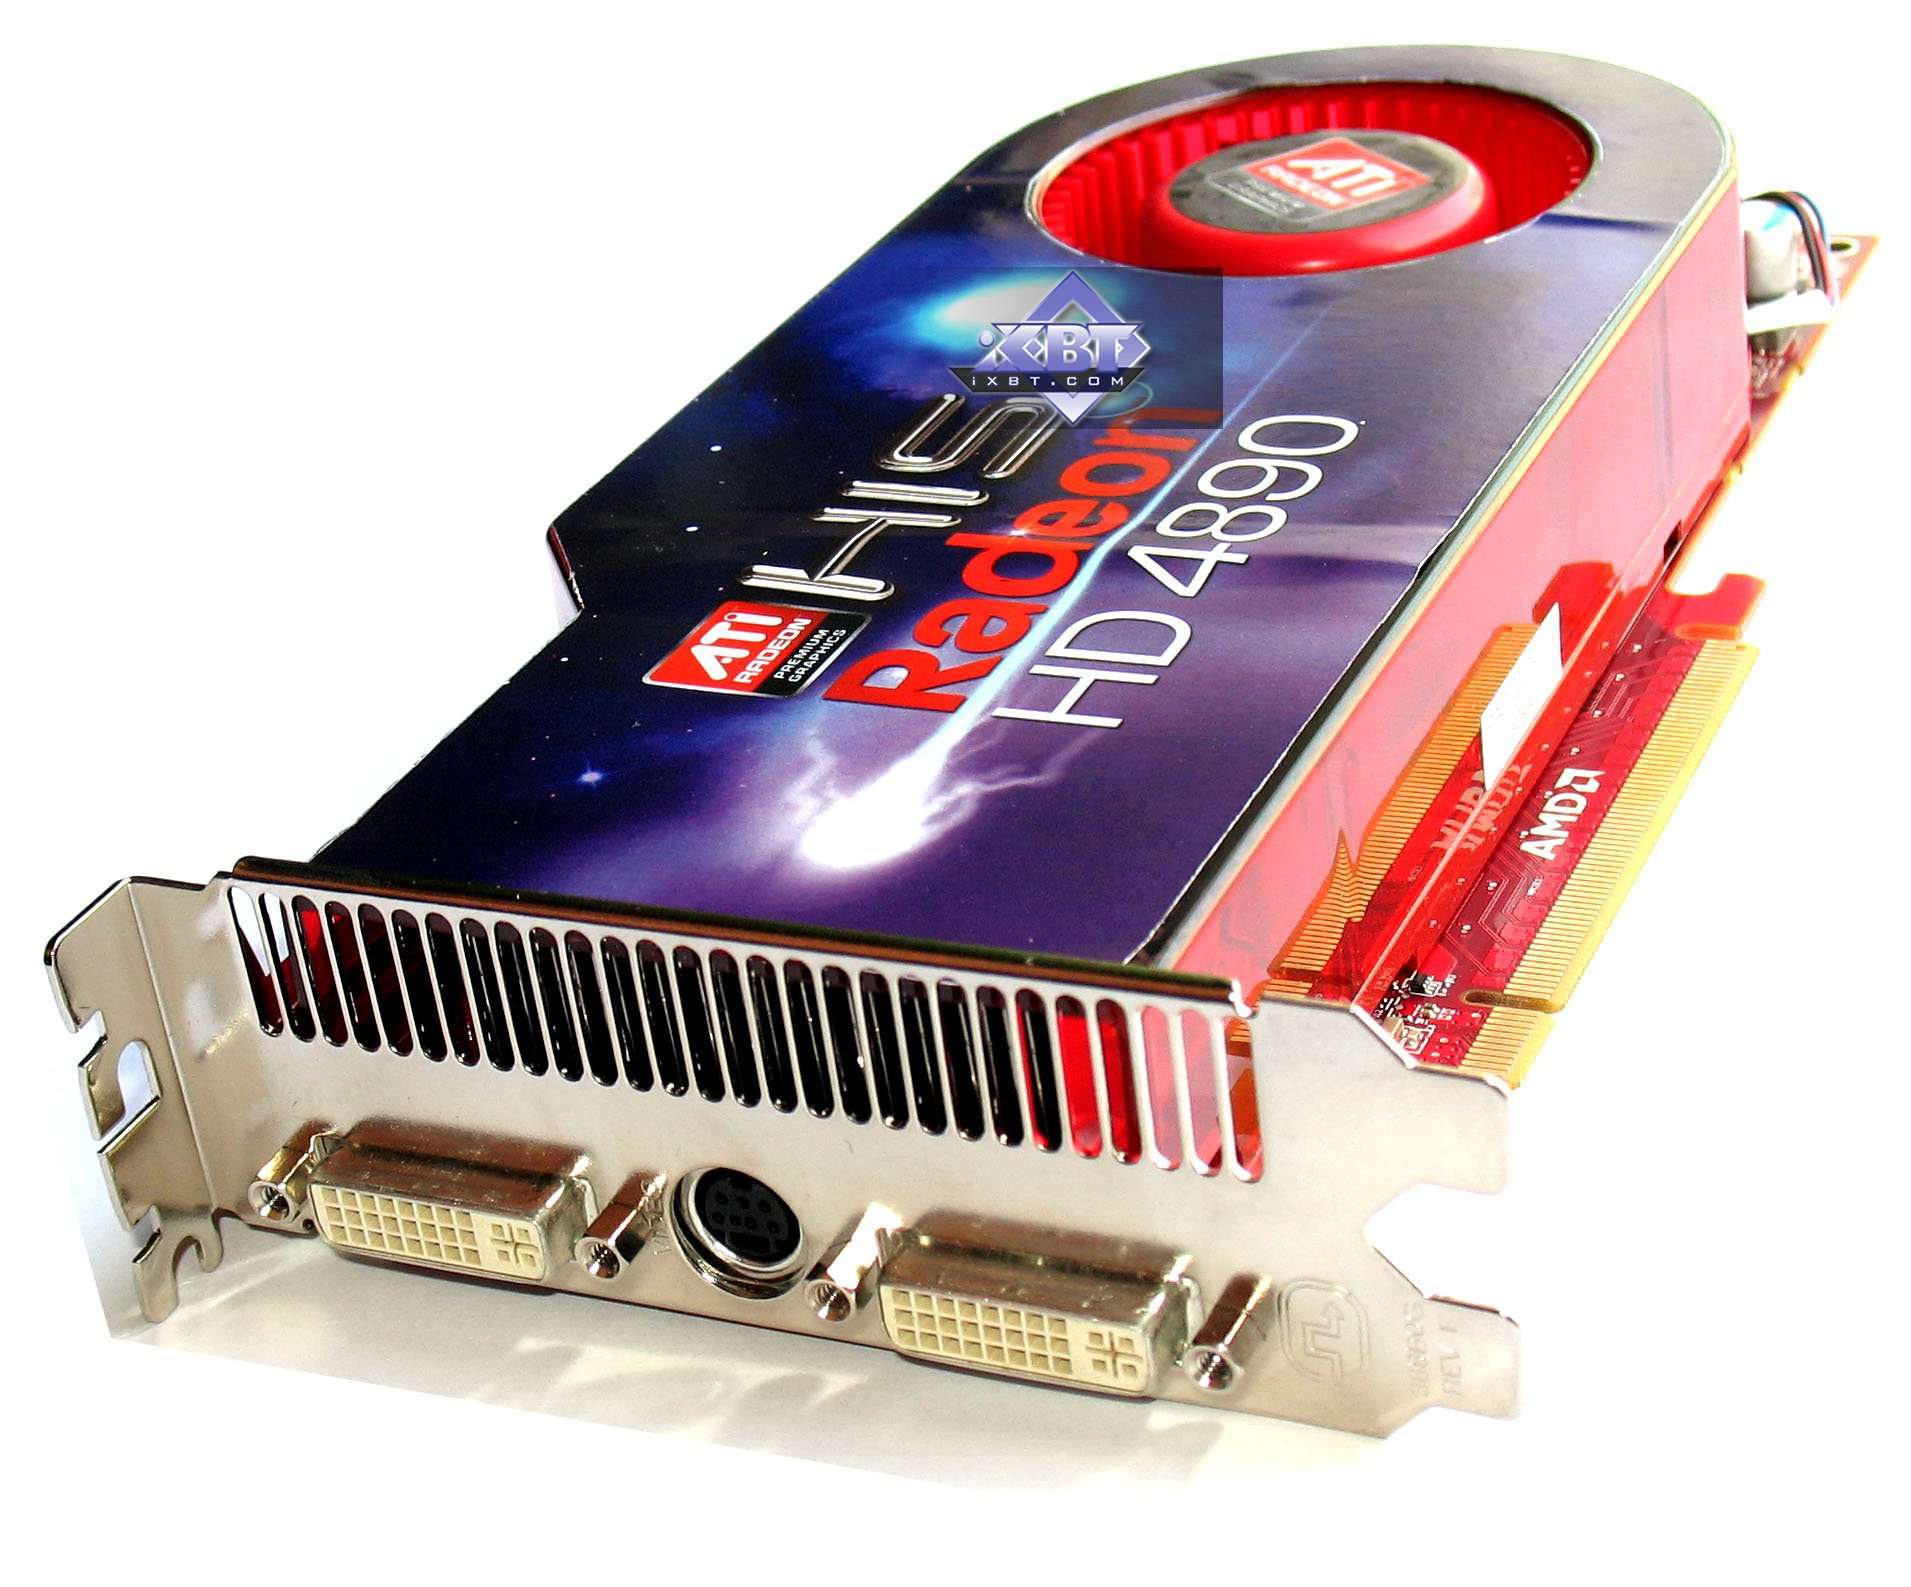 Ati radeon 1gb. Видеокарта AMD ATI Radeon hd4890. ASUS AMD Radeon 4890 1 GB.